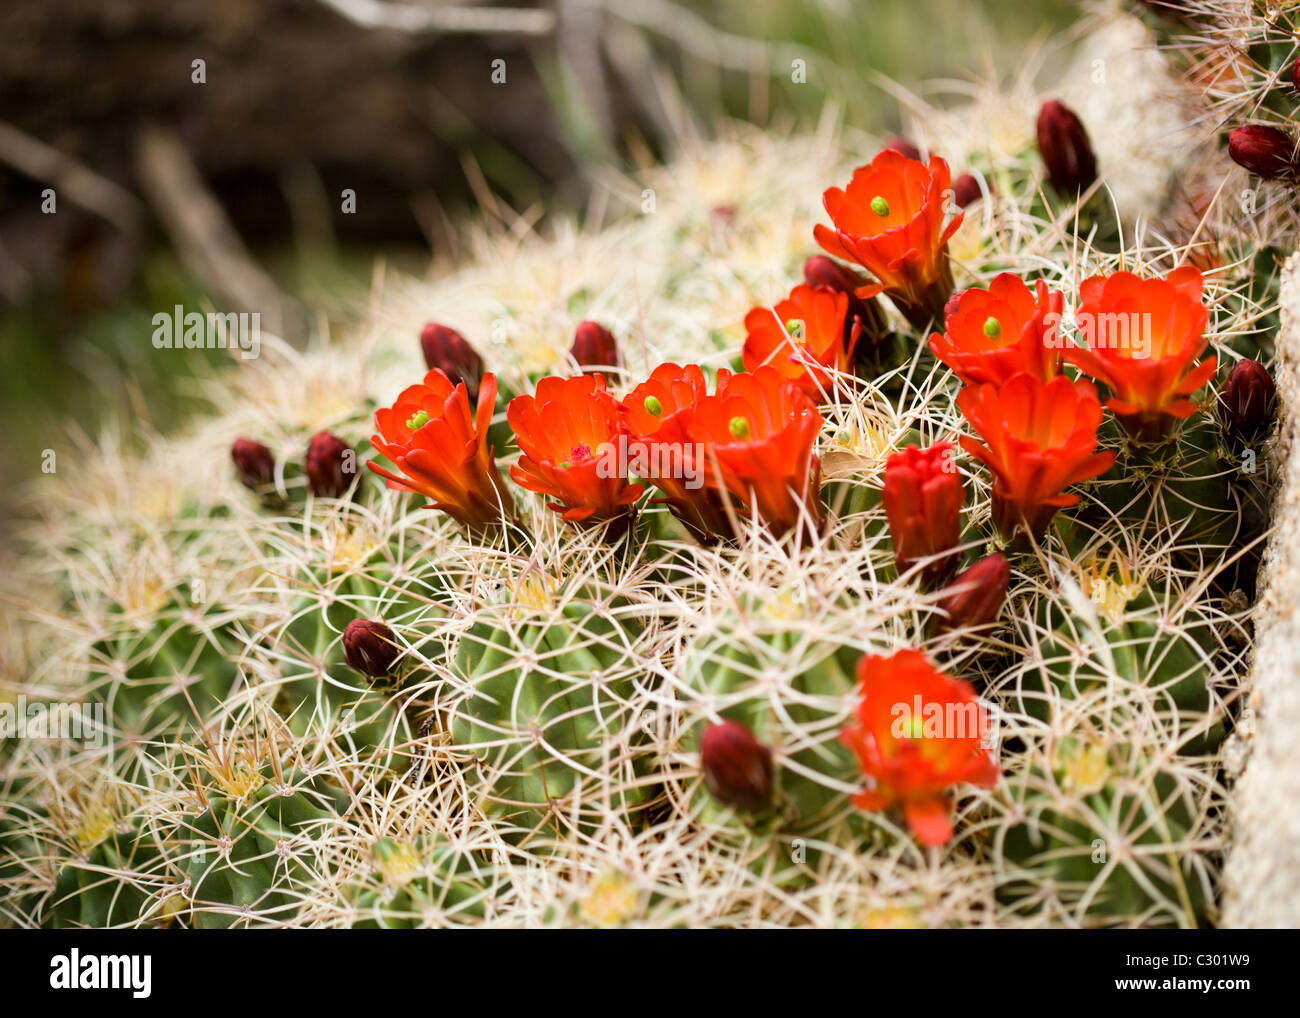 Monticule de Mojave cactus (Claret Cup) fleurit en printemps - désert de Mojave, Californie, USA Banque D'Images